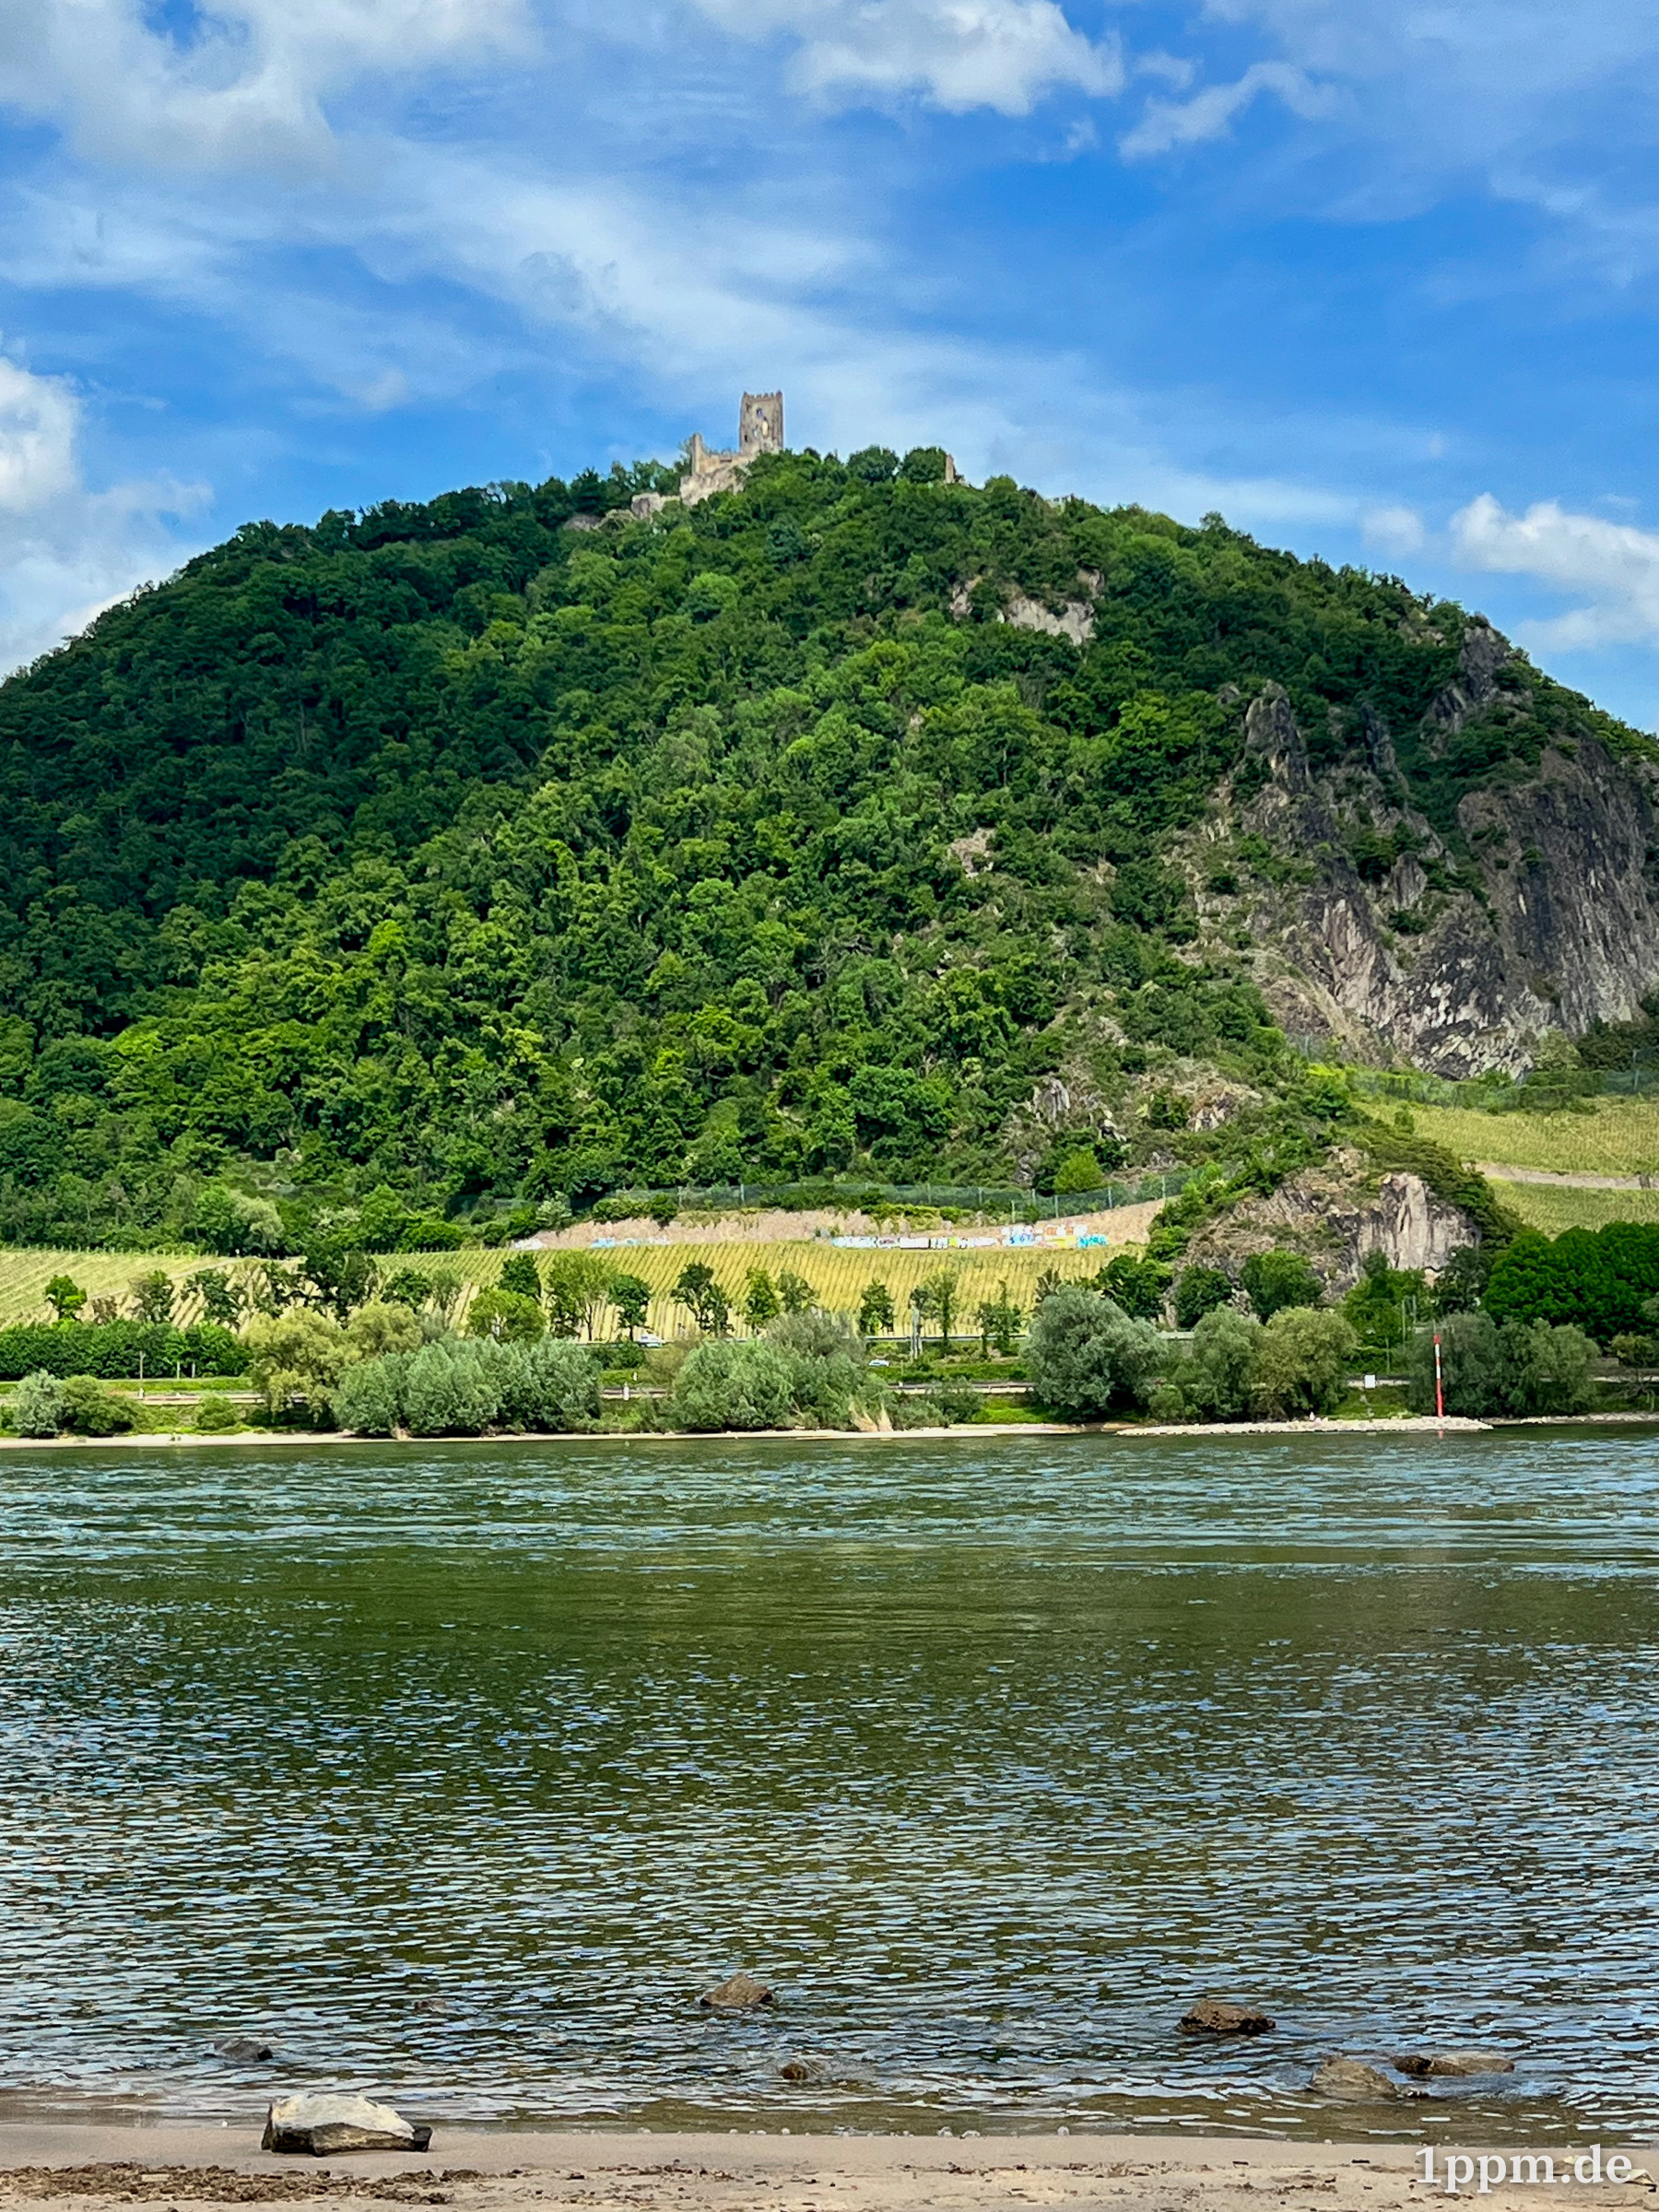 Blick auf den Drachenfels, eine Burgruine auf einem größeren Hügel, von der anderen Rheinseite aus.